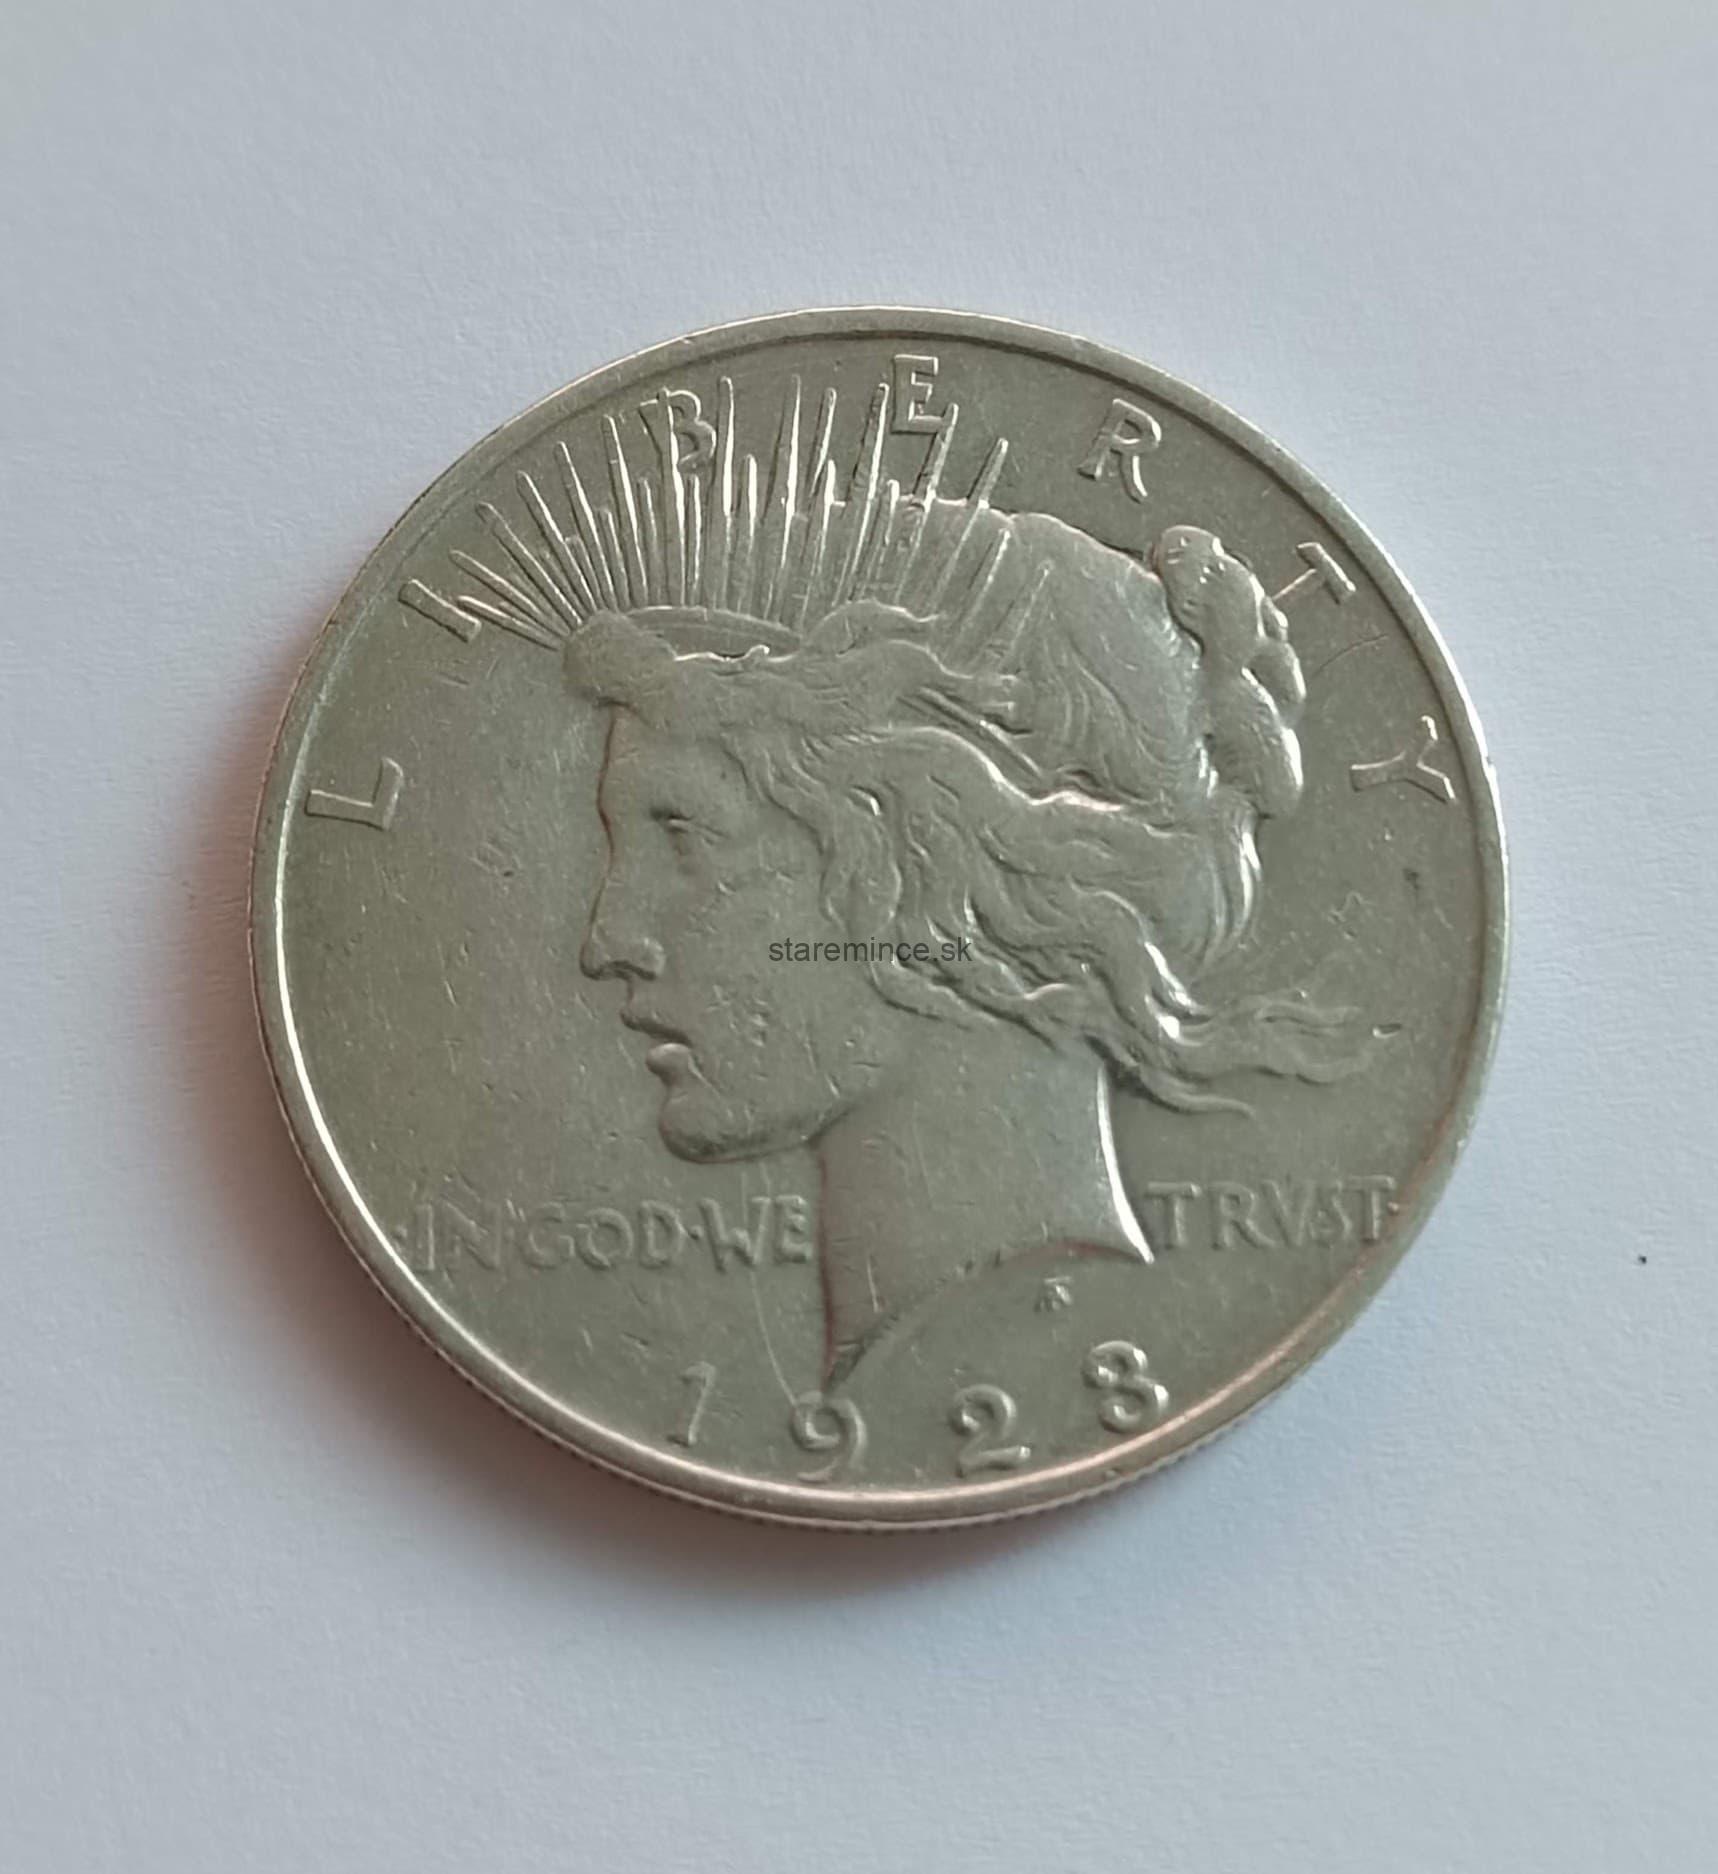 1 dollar 1923